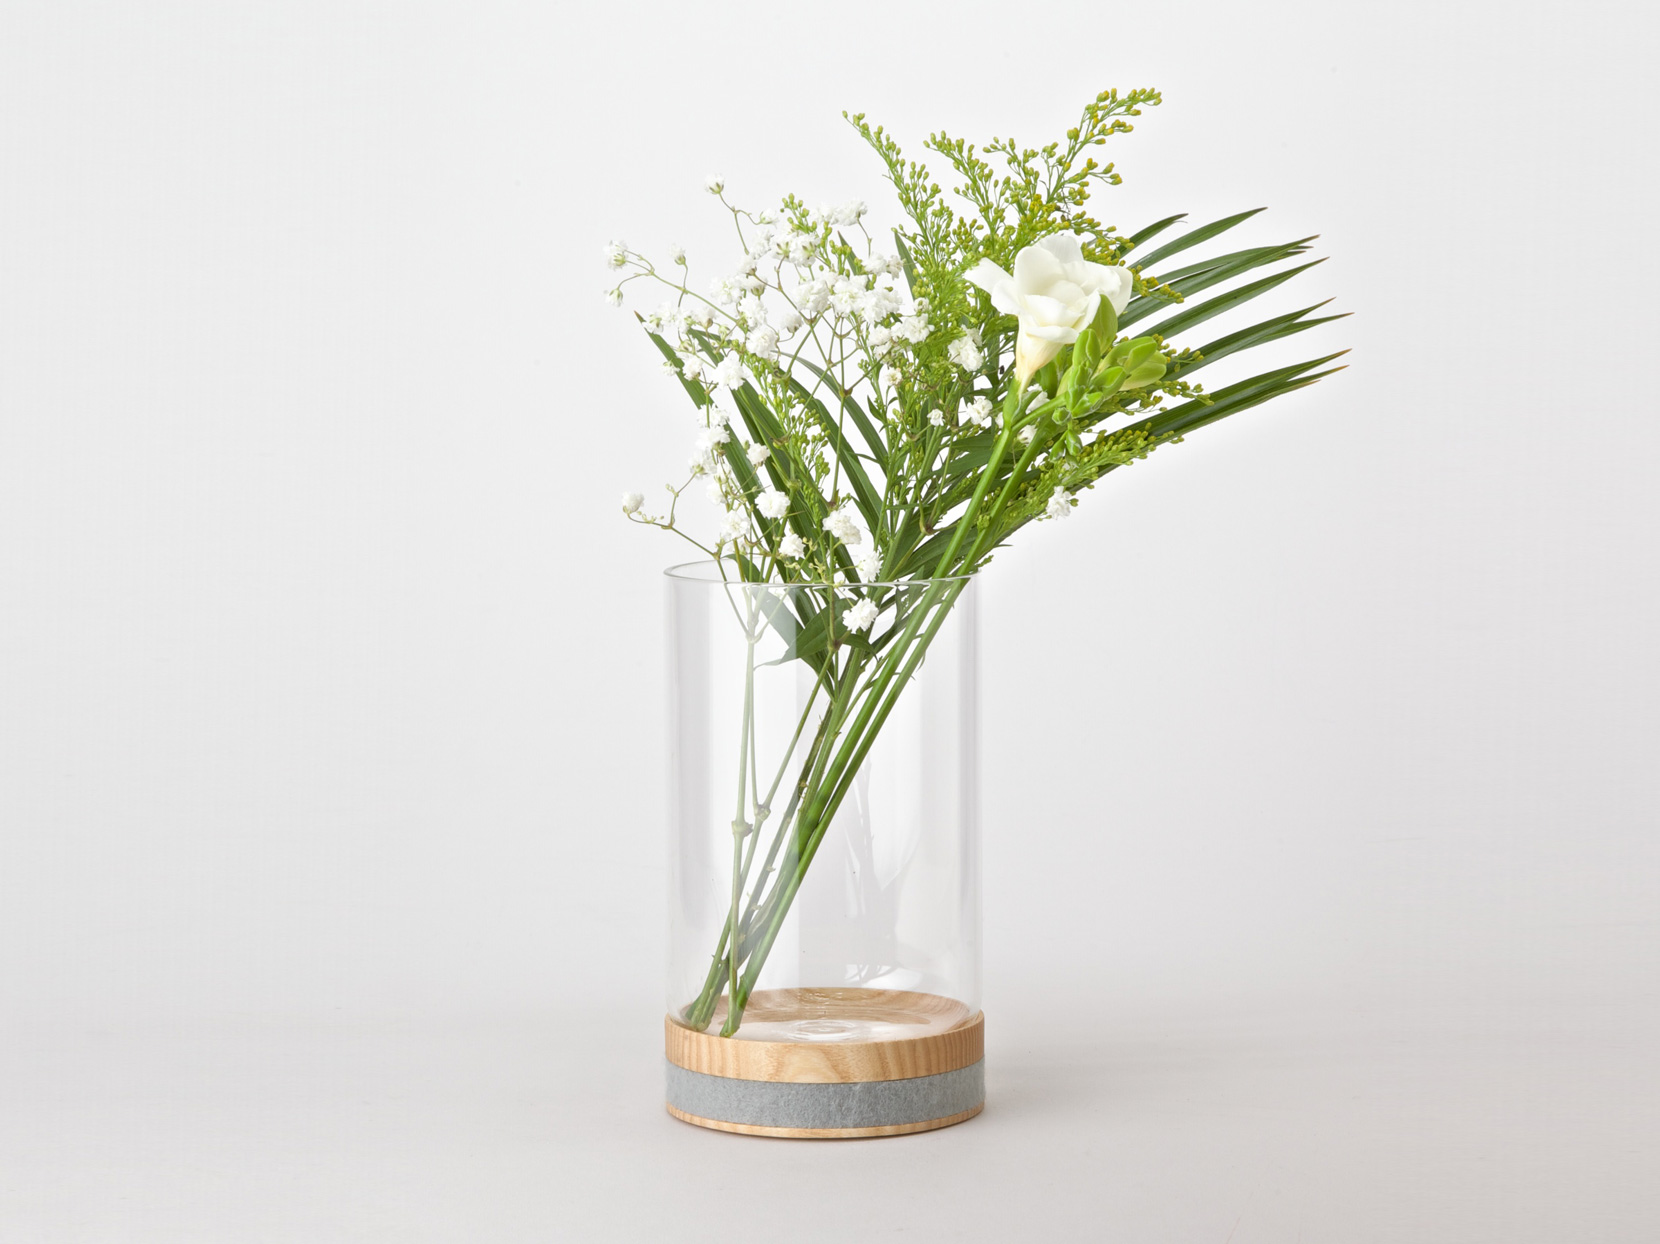 Minimal Obtineo wood and glass vase